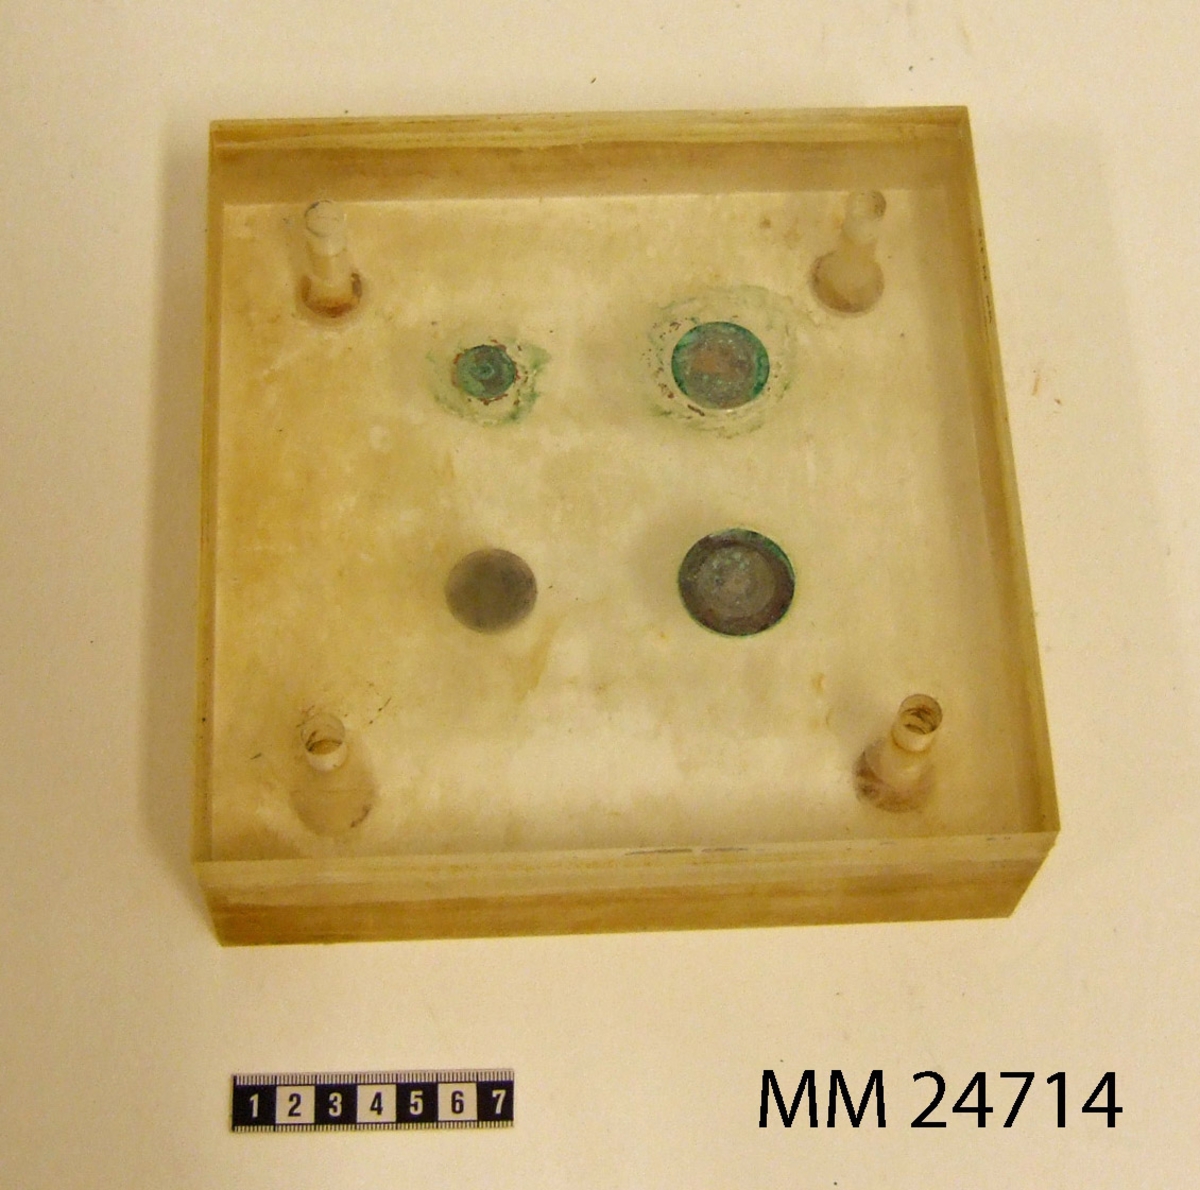 Platsblock av genomskinlig plast med fyra mynt ingjutna av valörerna 5 öre, 50 öre, 1 krona och 5 kronor. Hål borrat rakt genom plastkuben i alla hörnen med försänkning på ena sidan. Kuben delad och kan öppnas som med ett gångjärn.